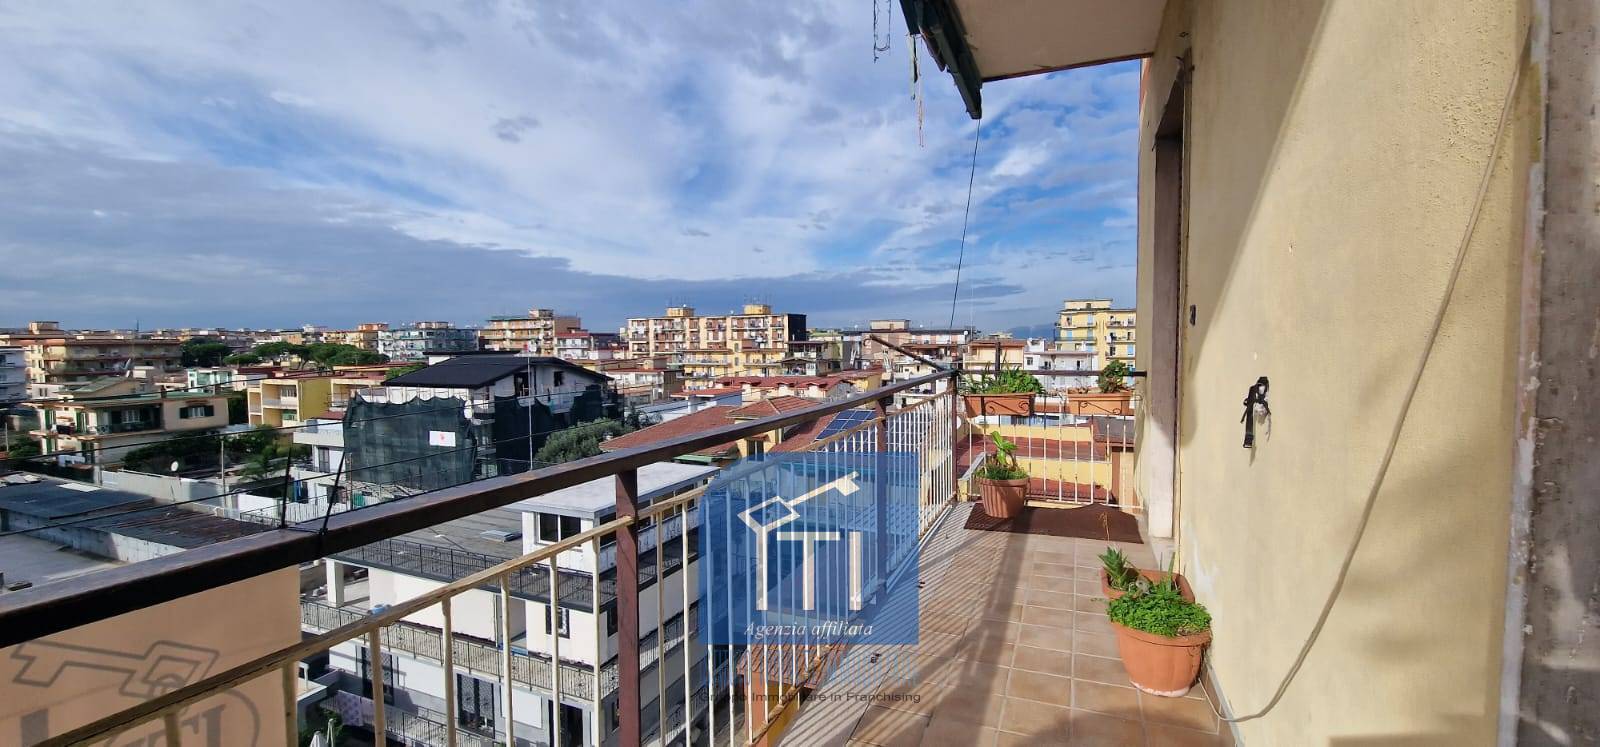 Appartamento in vendita a Arzano, 4 locali, prezzo € 157.000 | PortaleAgenzieImmobiliari.it